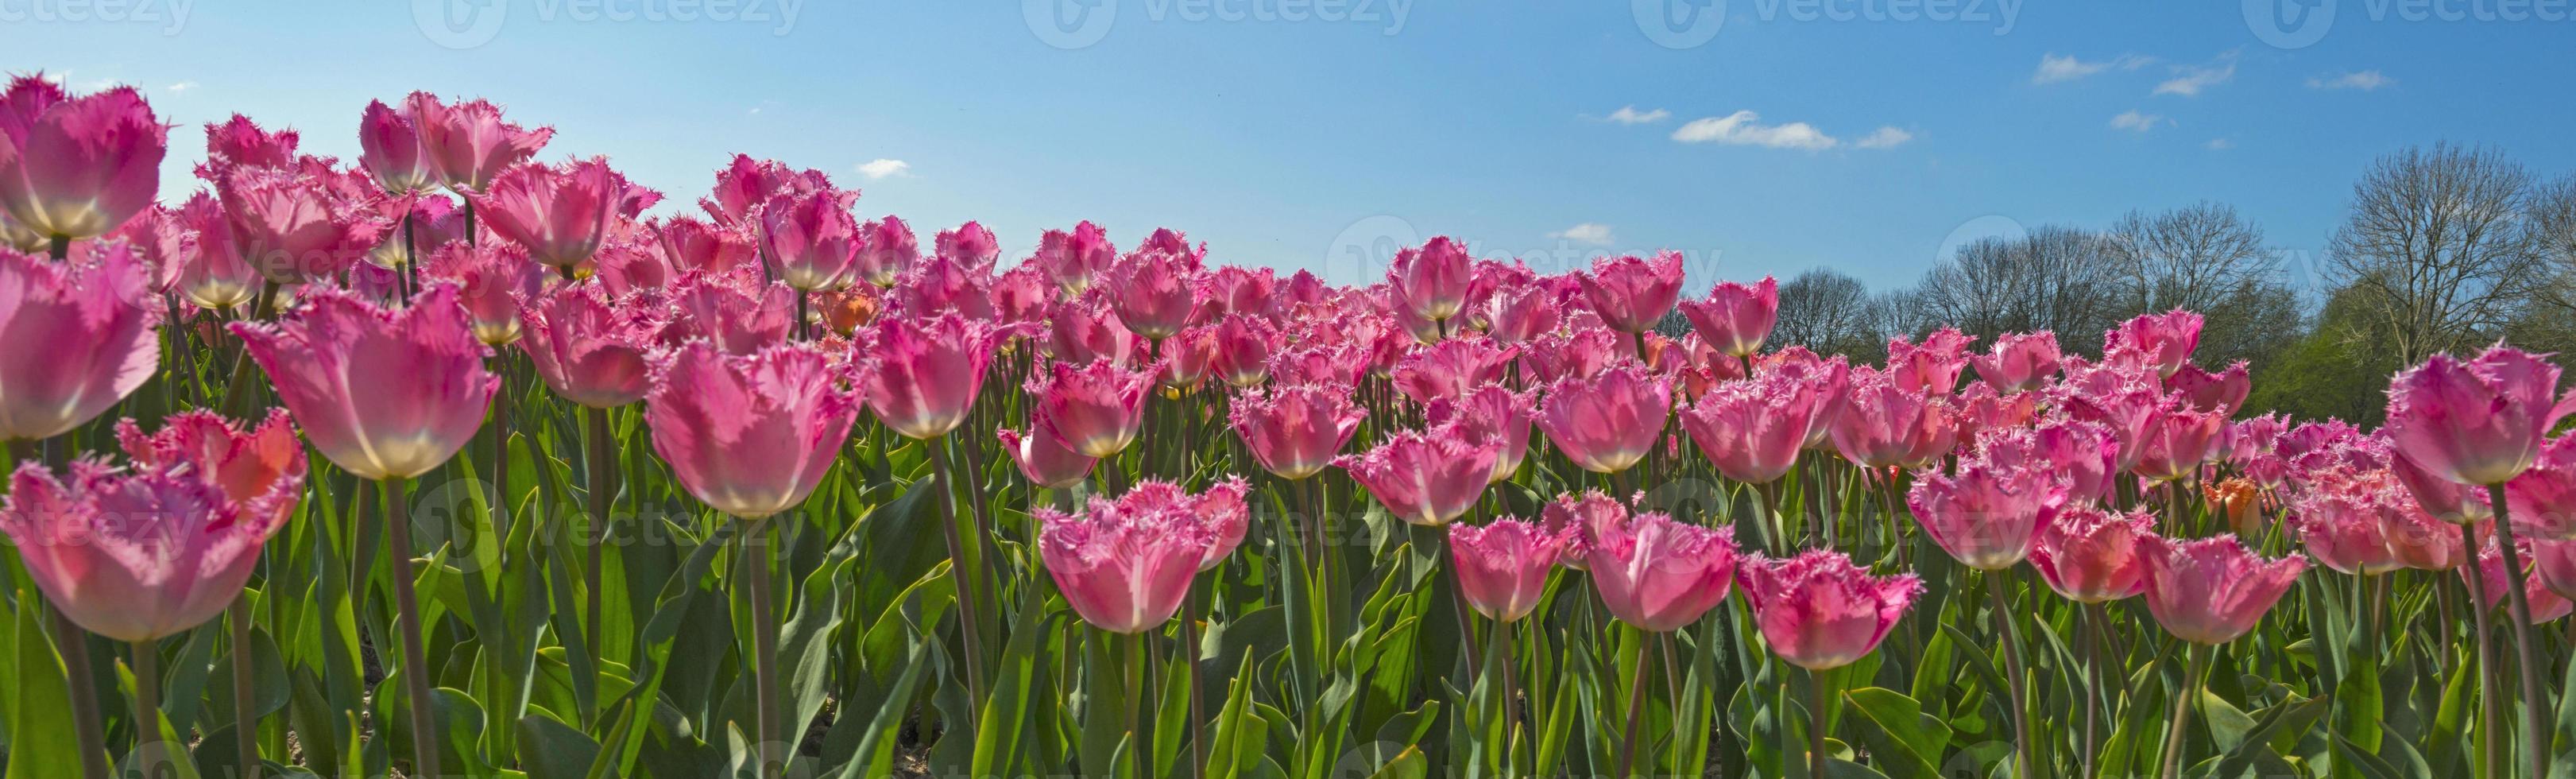 Tulpen auf einem Feld im Frühjahr foto